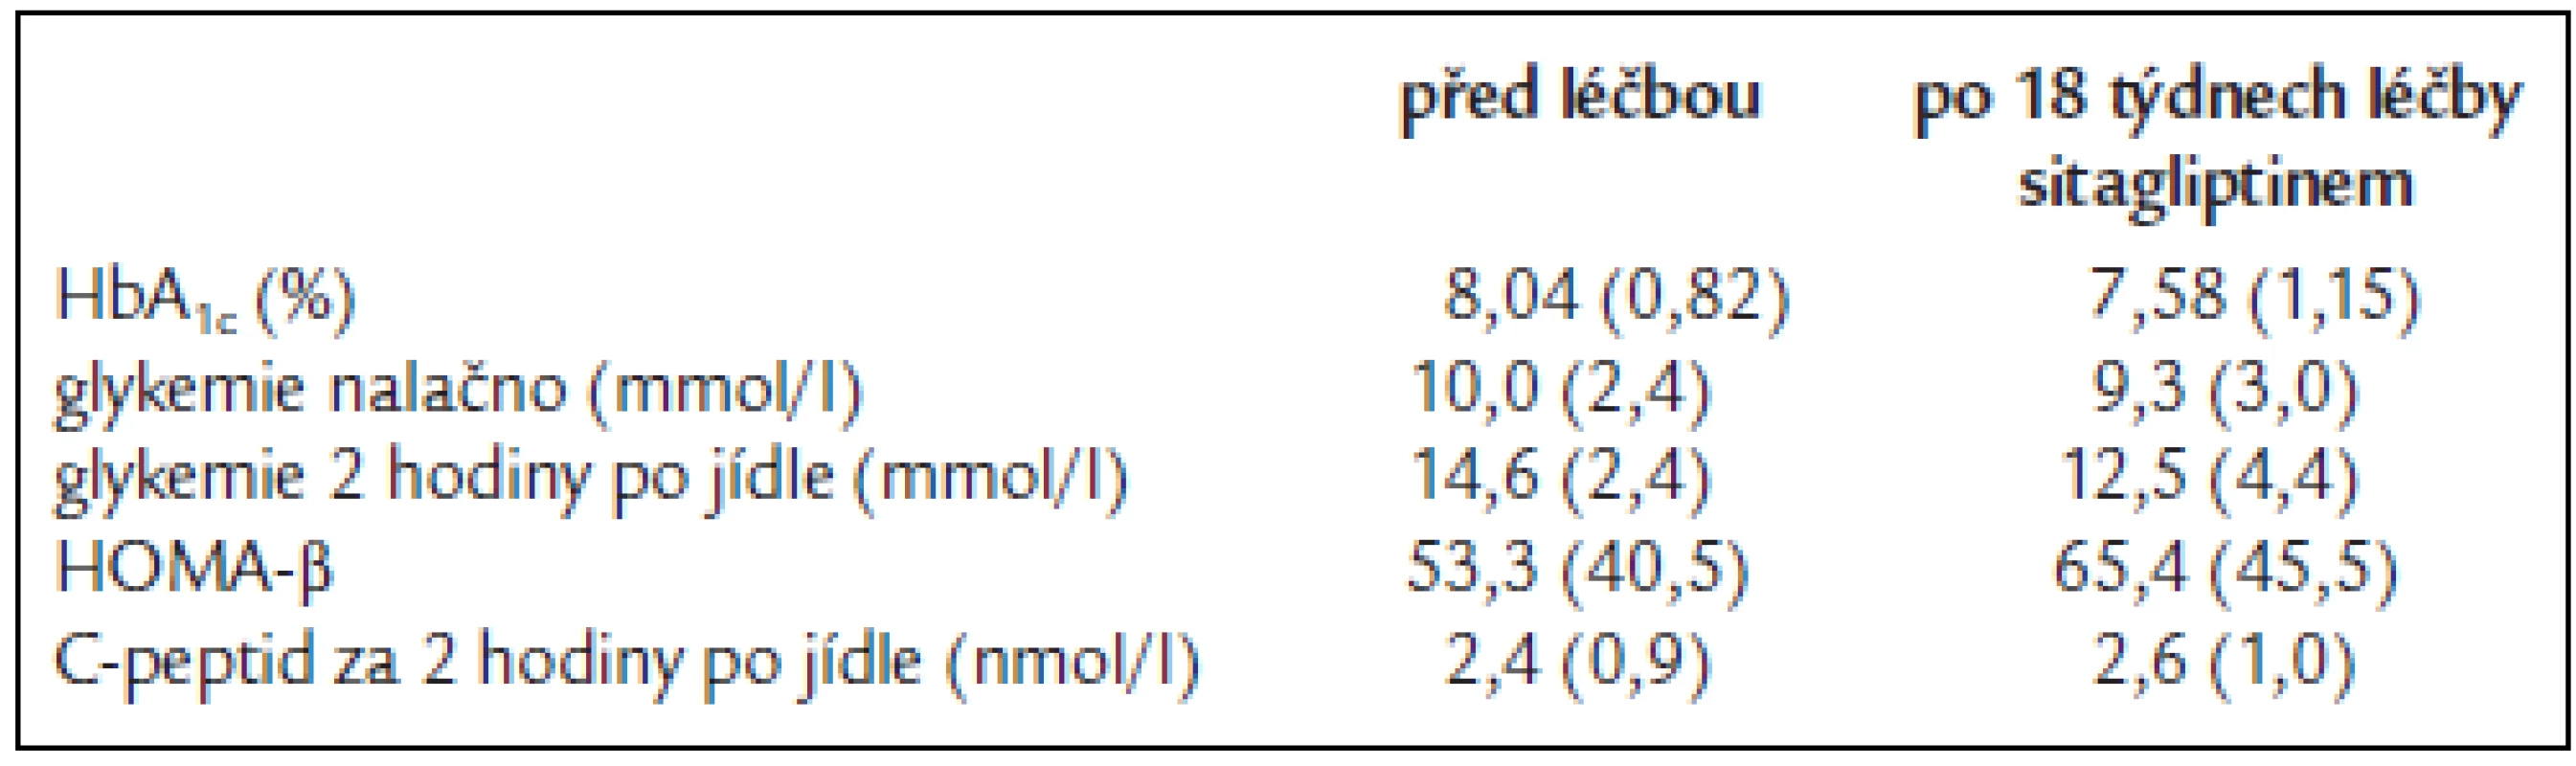 Statisticky významné změny při podávání sitagliptinu v monoterapii diabetikům 2. typu oproti podávání placeba [18].